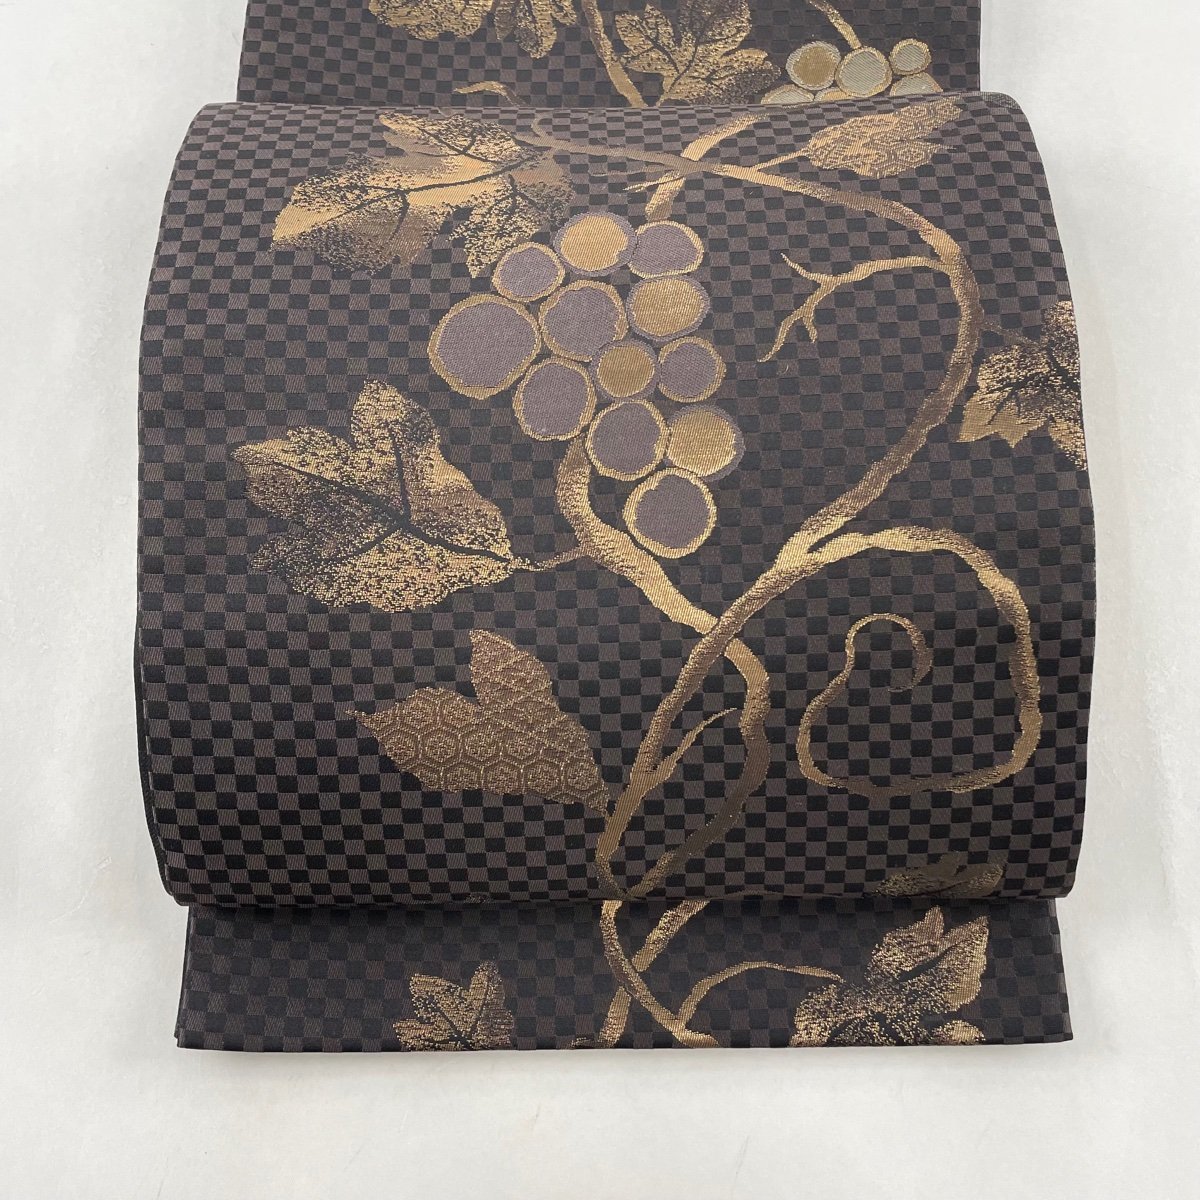 袋帯 帯 中古 リサイクル帯 正絹 仕立て上がり 刺繍 西陣織証紙番号 